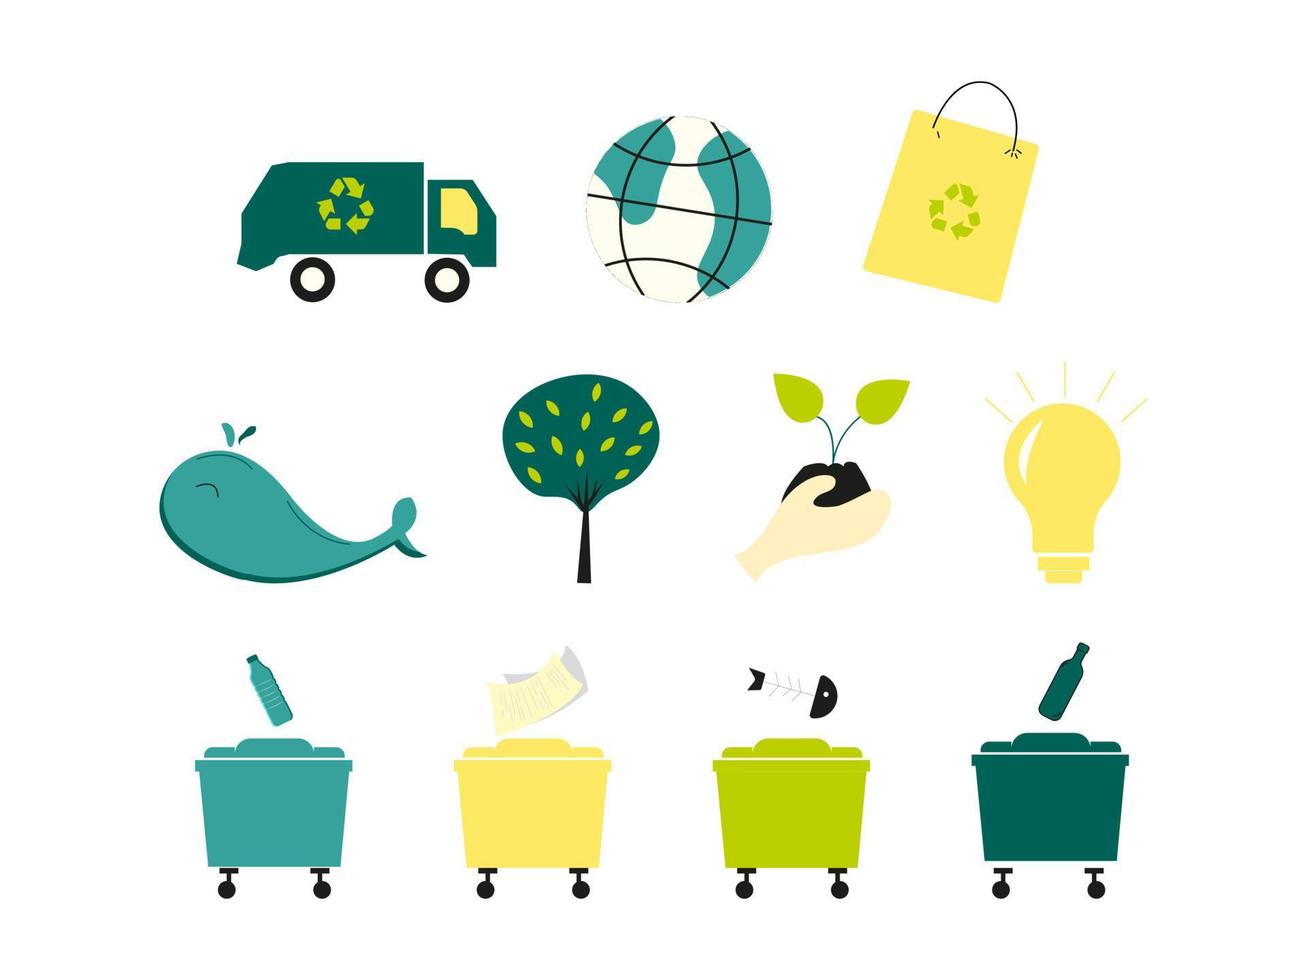 la colección de elementos de reciclaje incluyó camión de basura, bolsa de papel, árbol, planta, bombilla, botes de basura, ballena como habitante del océano. vector